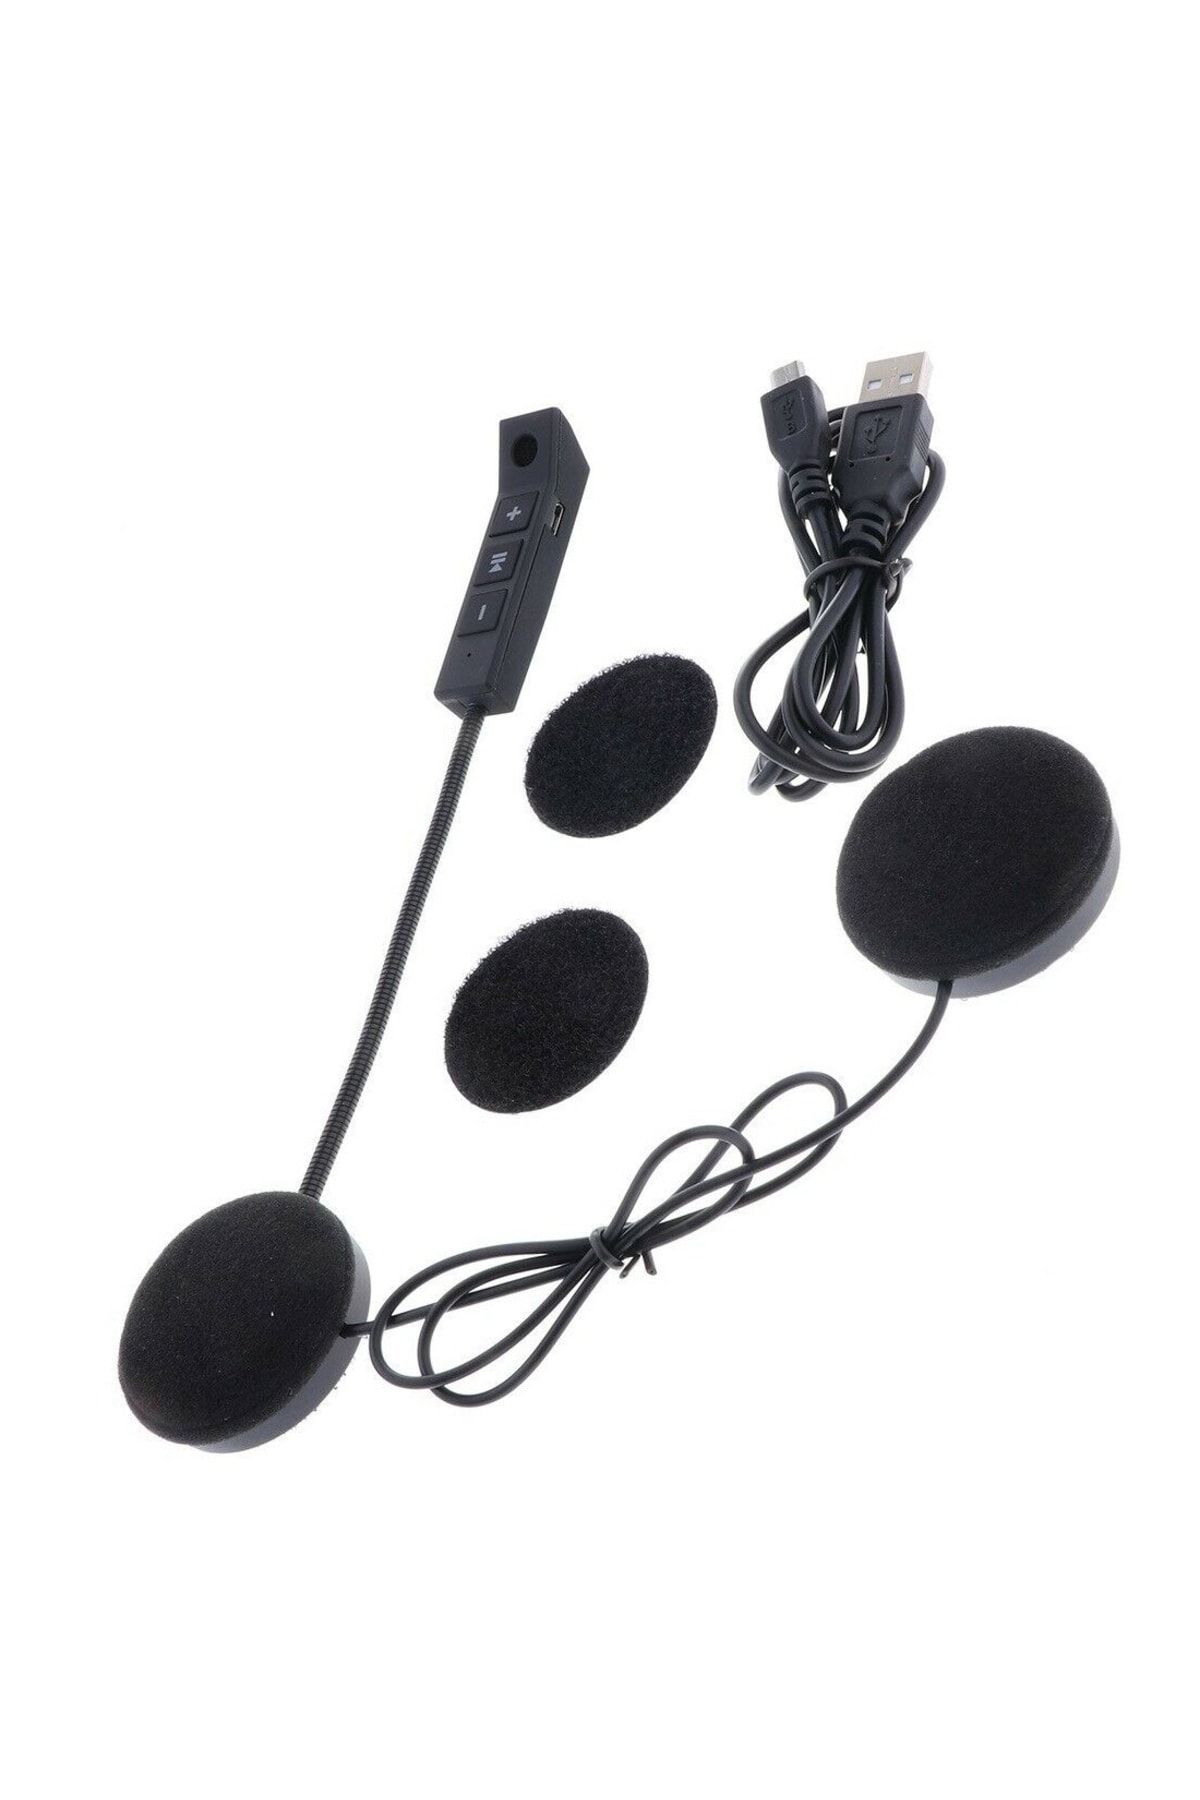 JUNGLEE Motosiklet Bluetooth Kulaklık Intercom Kask Earphone Telefon Konuşması Ve Müzik Dinleme